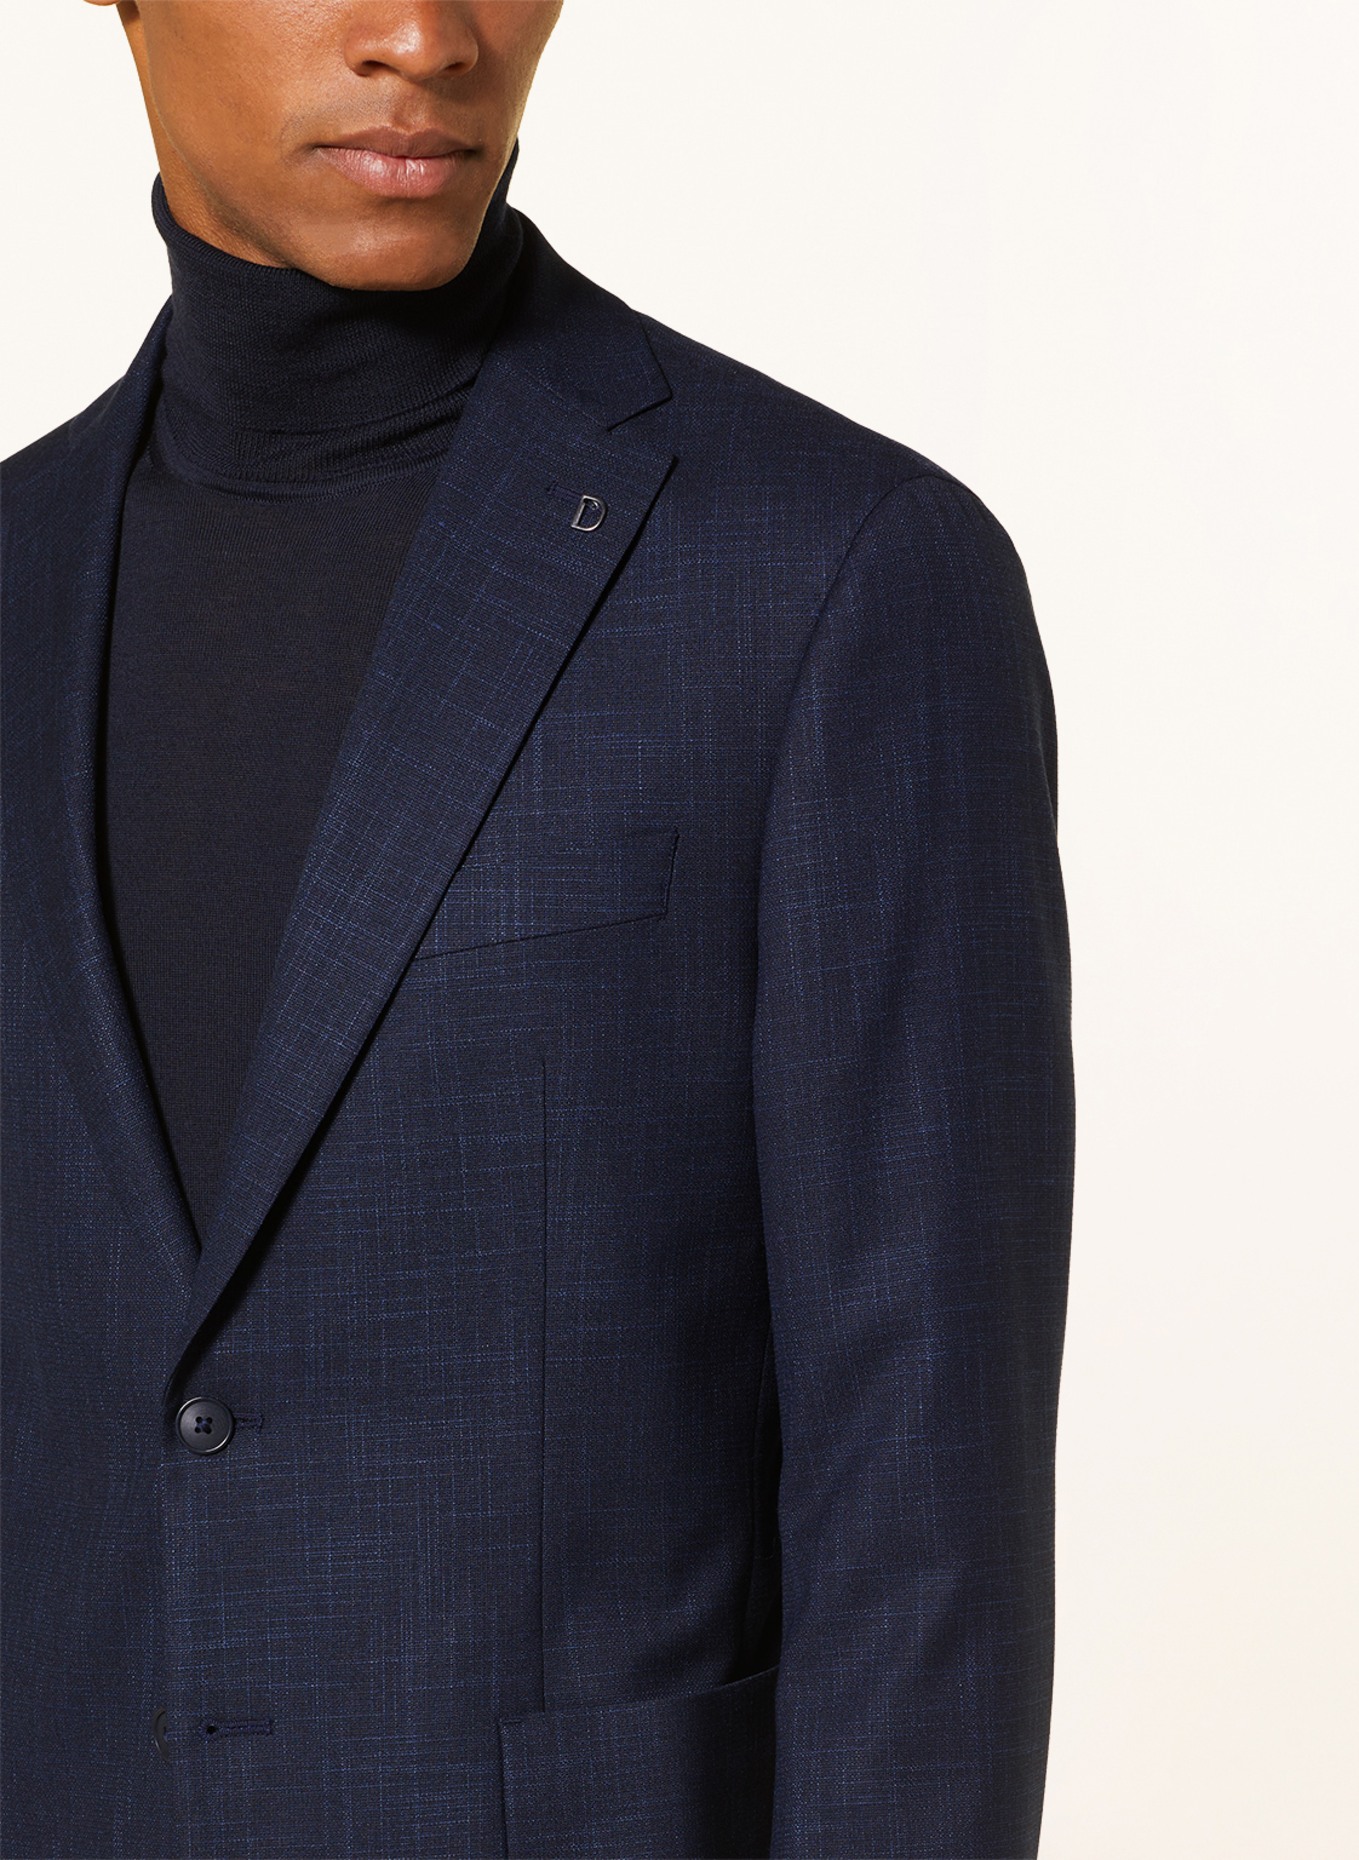 DIGEL Suit jacket EDWARD modern fit, Color: 22 BLAU (Image 5)